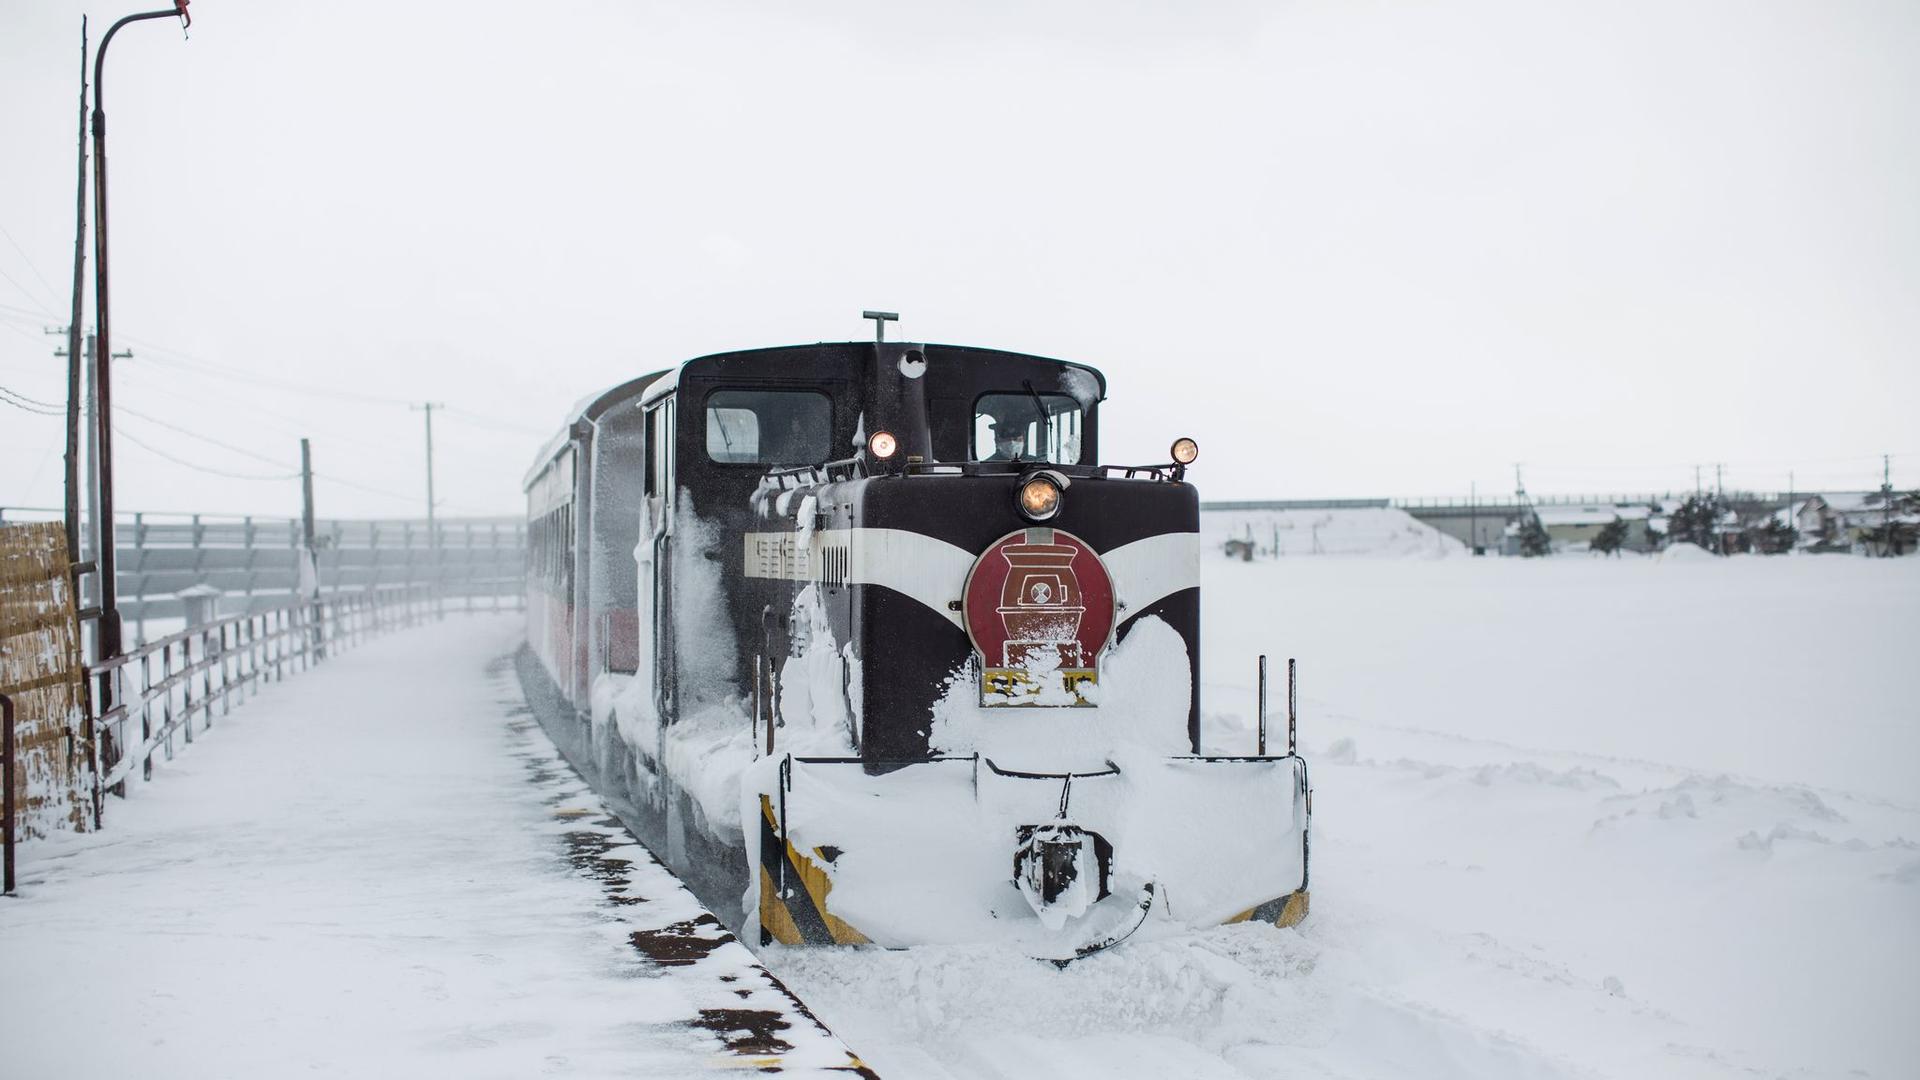 Stove Winter Train